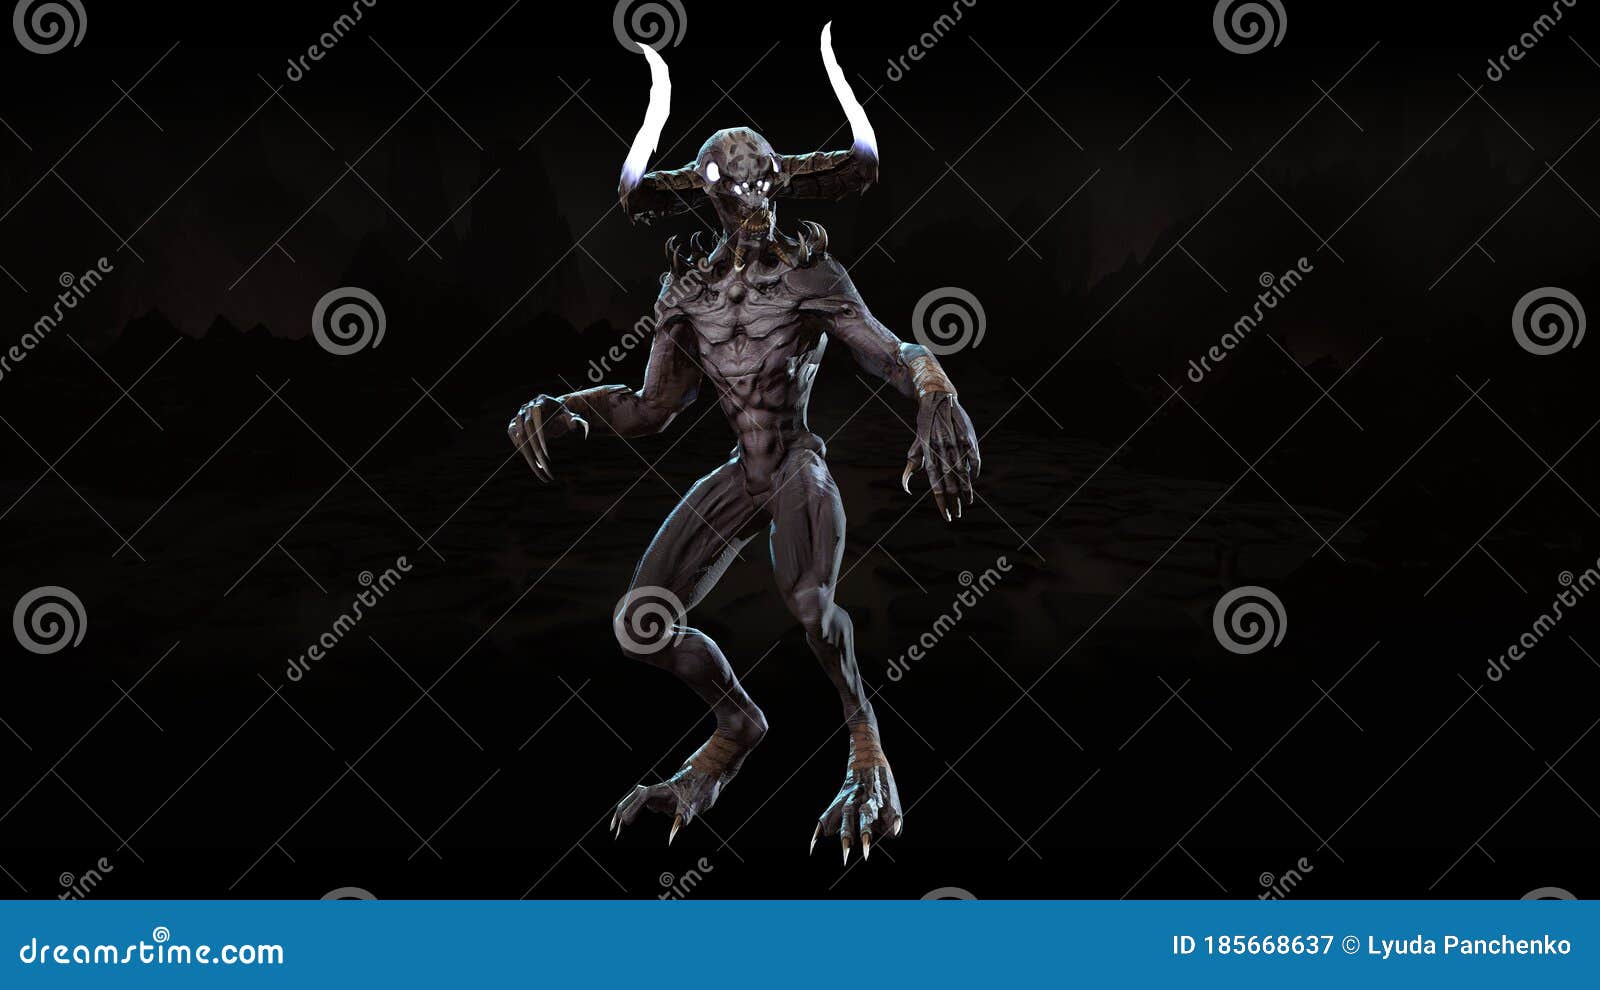 demon mythical monster 3d render